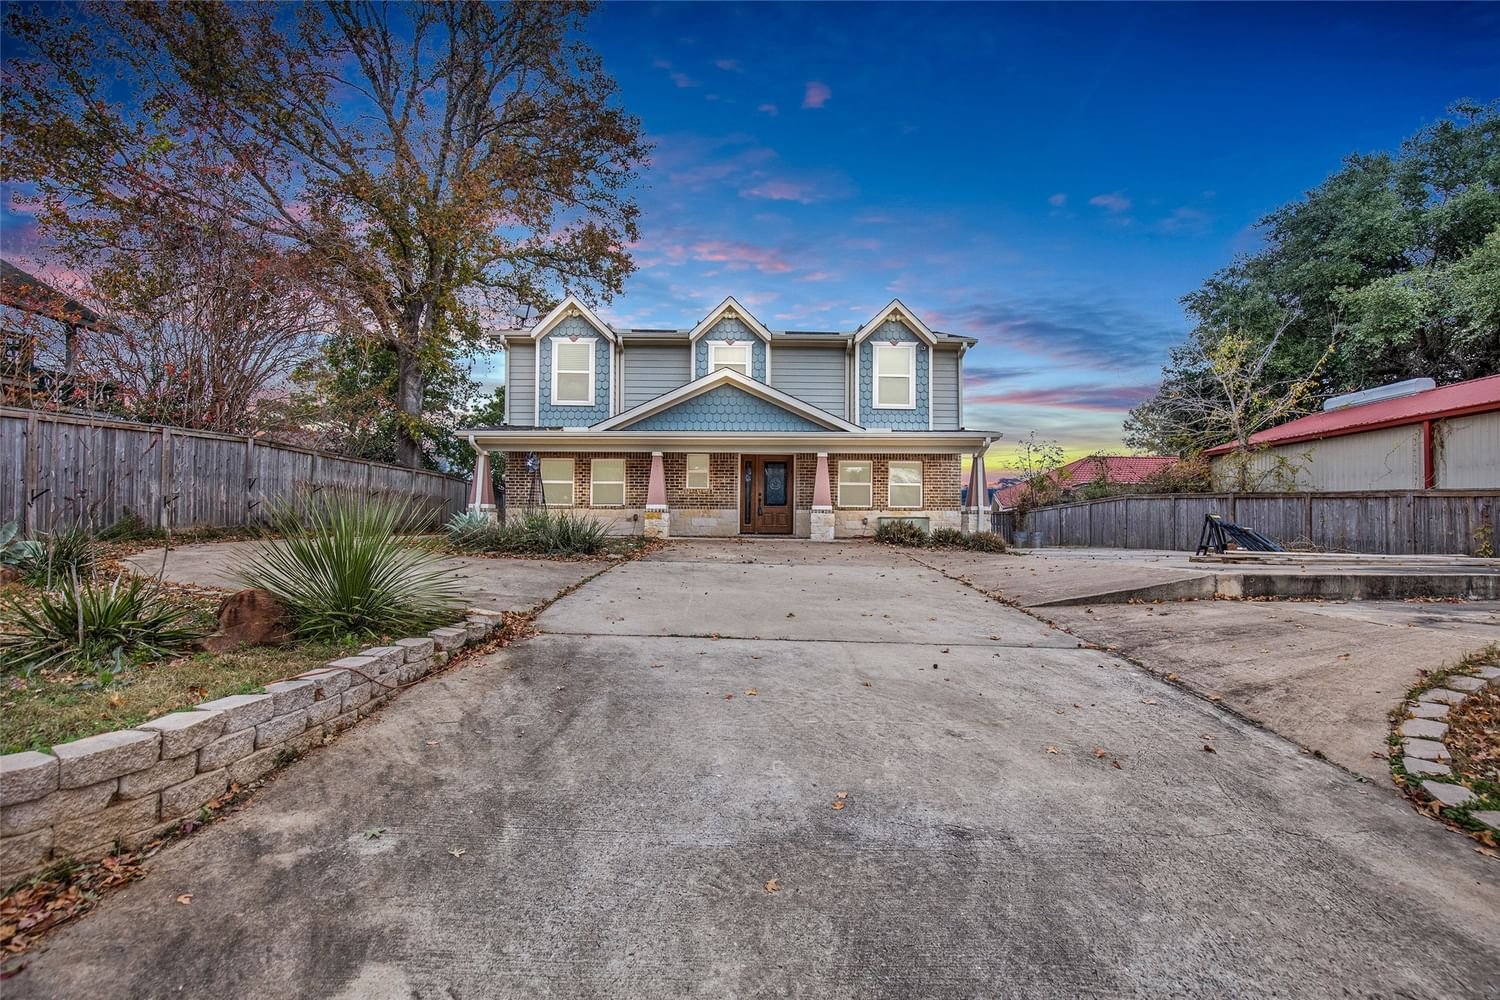 Real estate property located at 104 Hillcrest, San Jacinto, Coldspring Terrace #1, Coldspring, TX, US